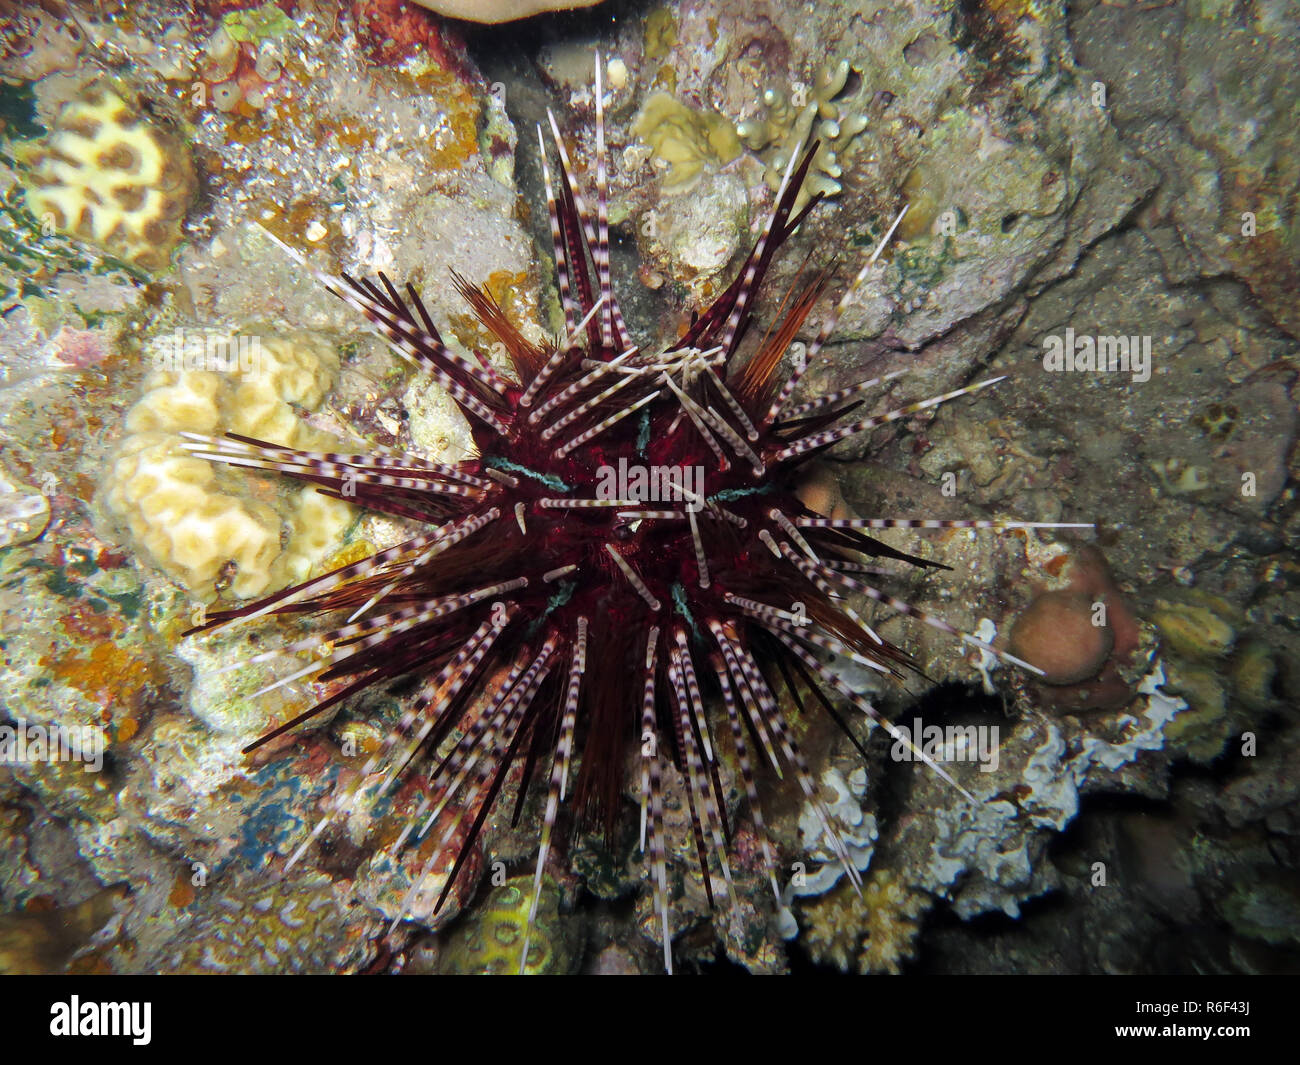 pencil tiara sea urchin echinothrix calamaris Stock Photo